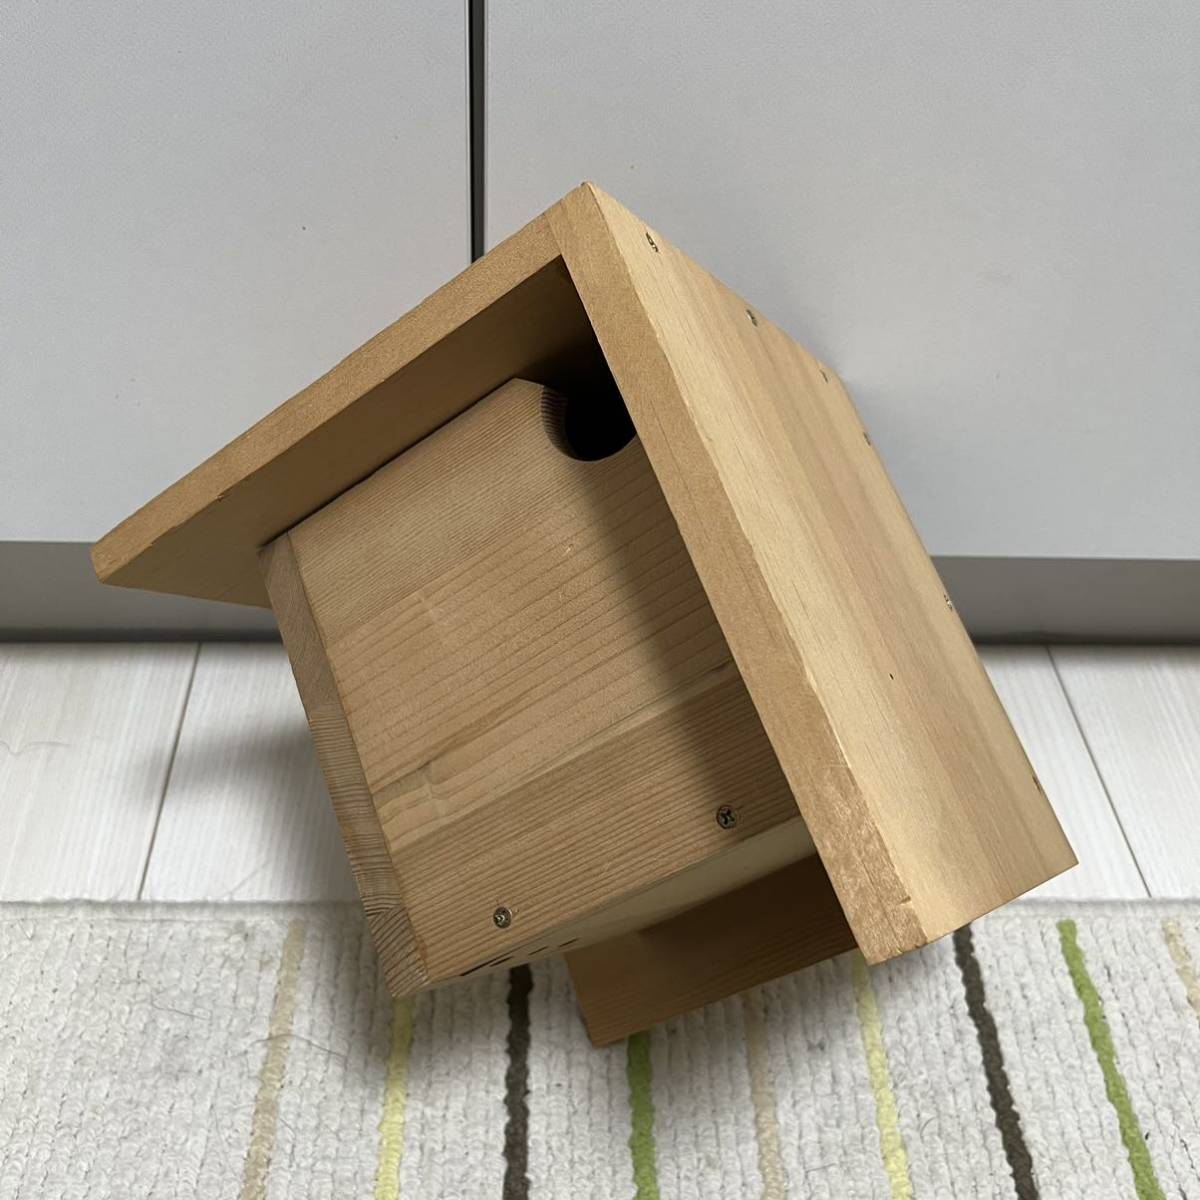  птица. гнездо коробка ручная работа из дерева 